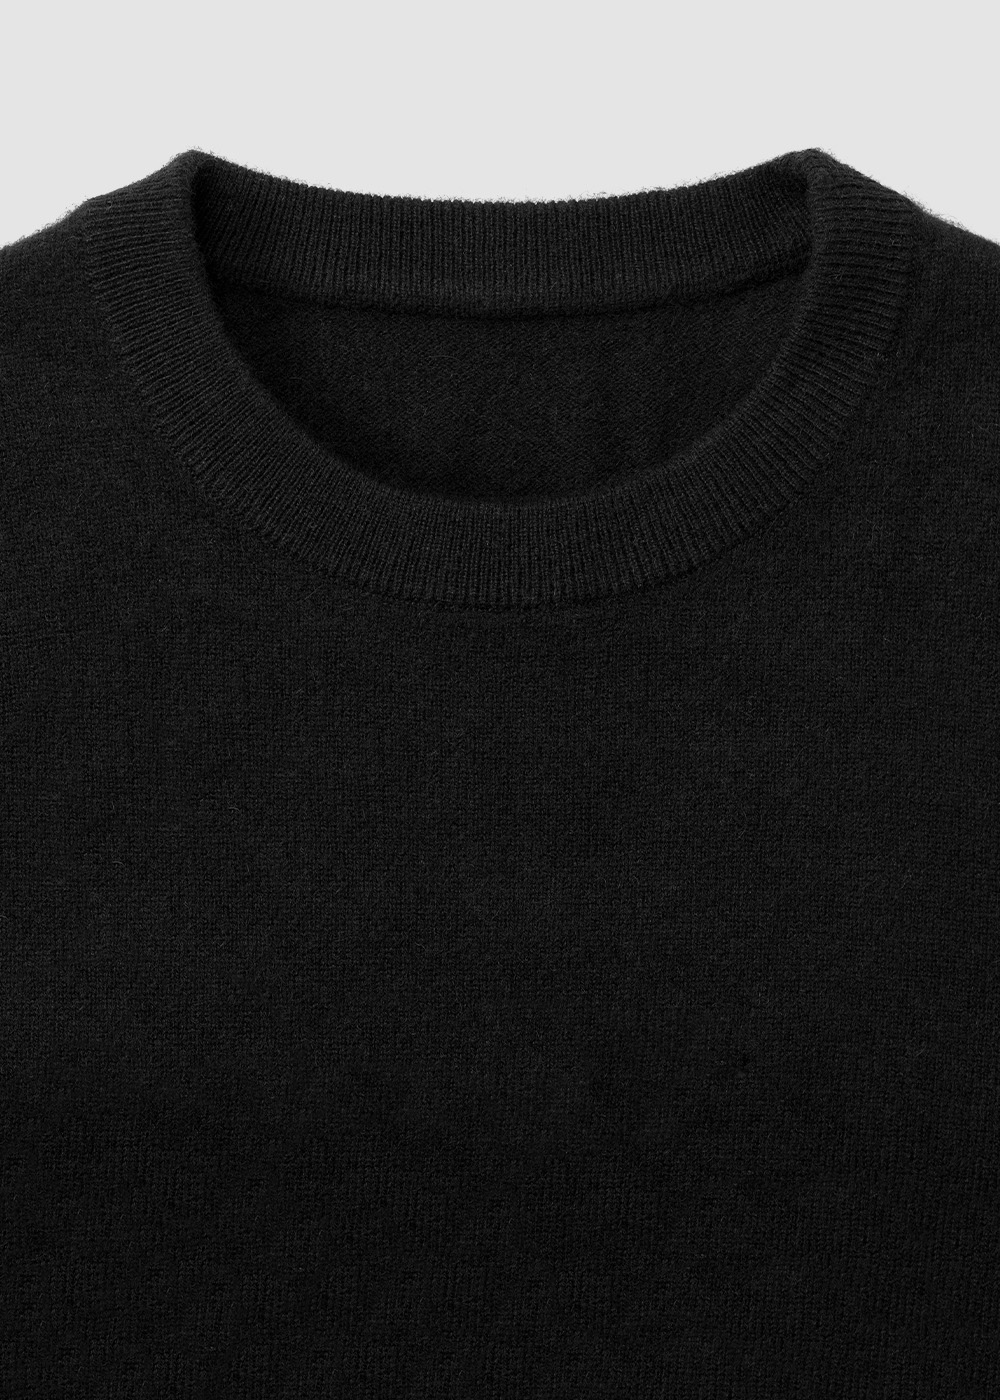 Cashmere 30% Blended Crewneck Knit _ black